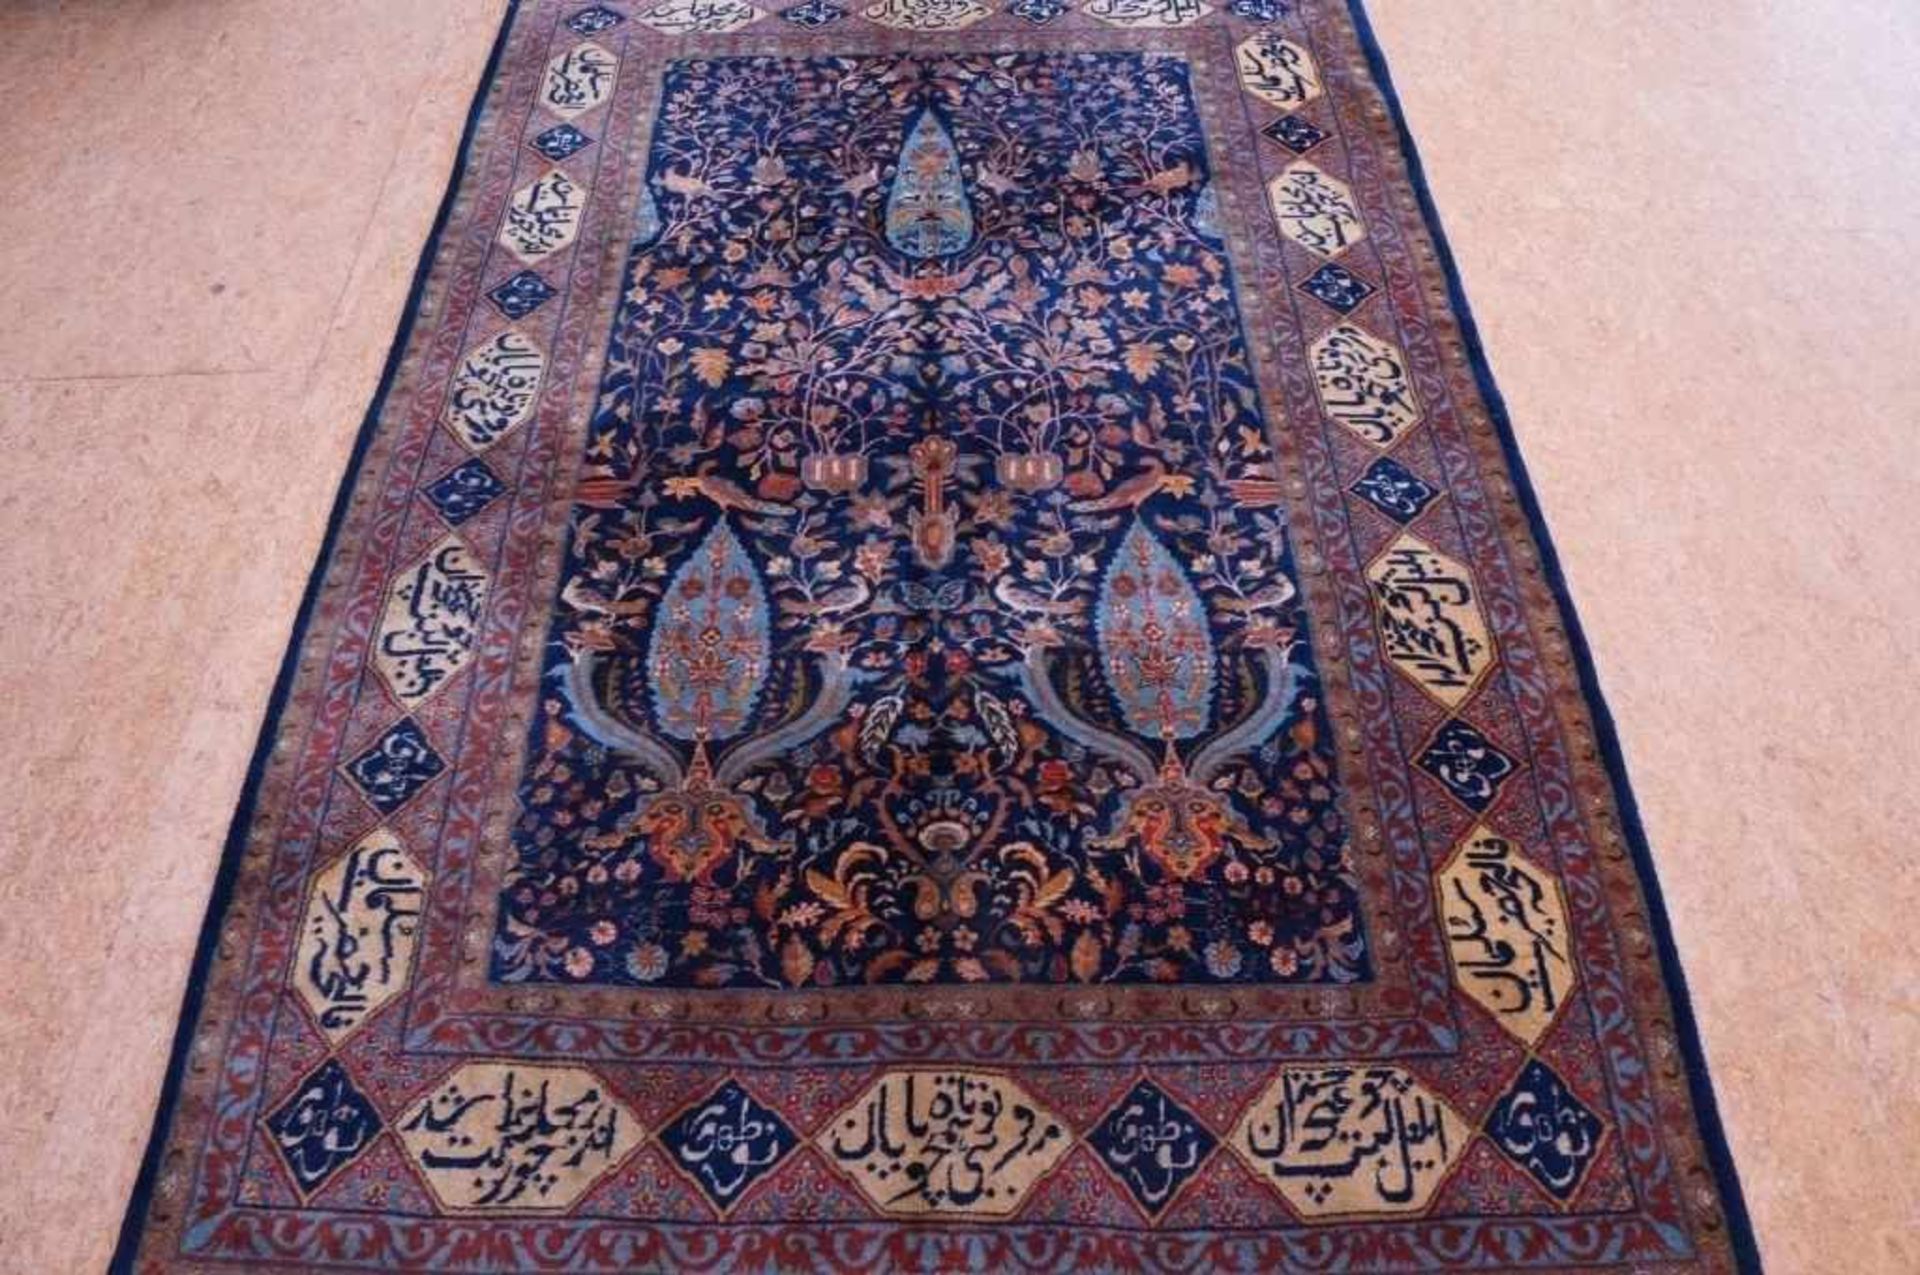 Kerman carpet 240 x 150 cm.